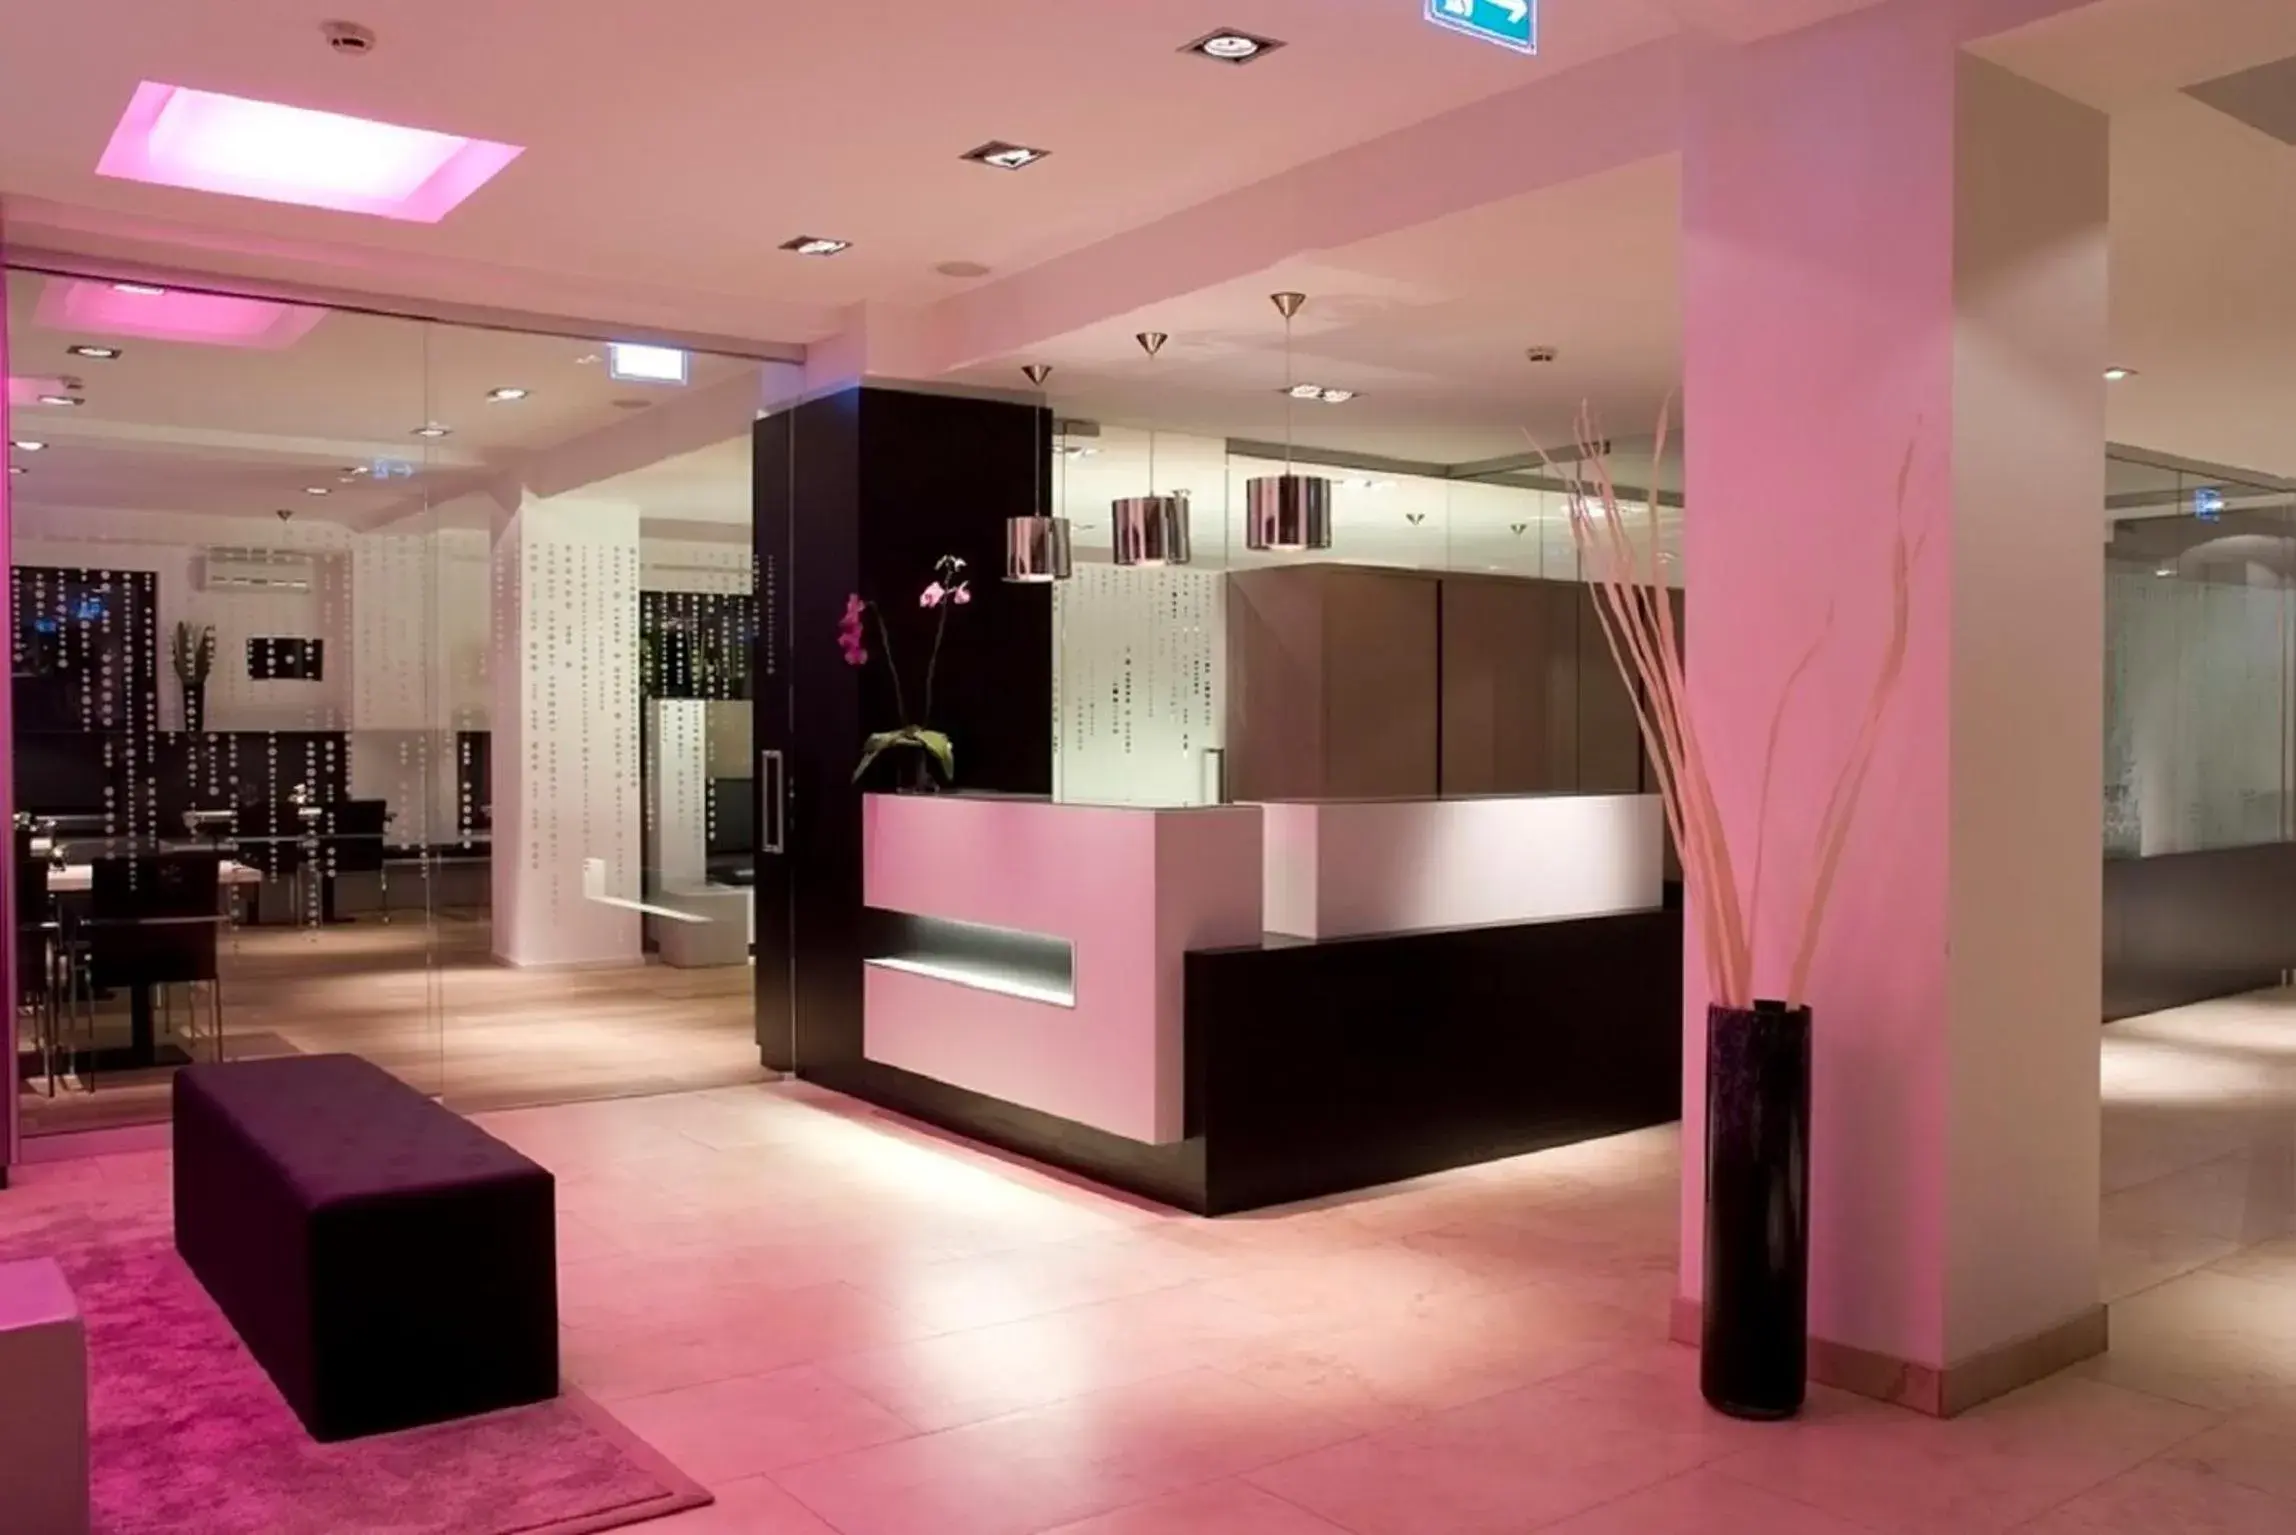 Lobby or reception, Lobby/Reception in Pearl Design Hotel - Frankfurt City